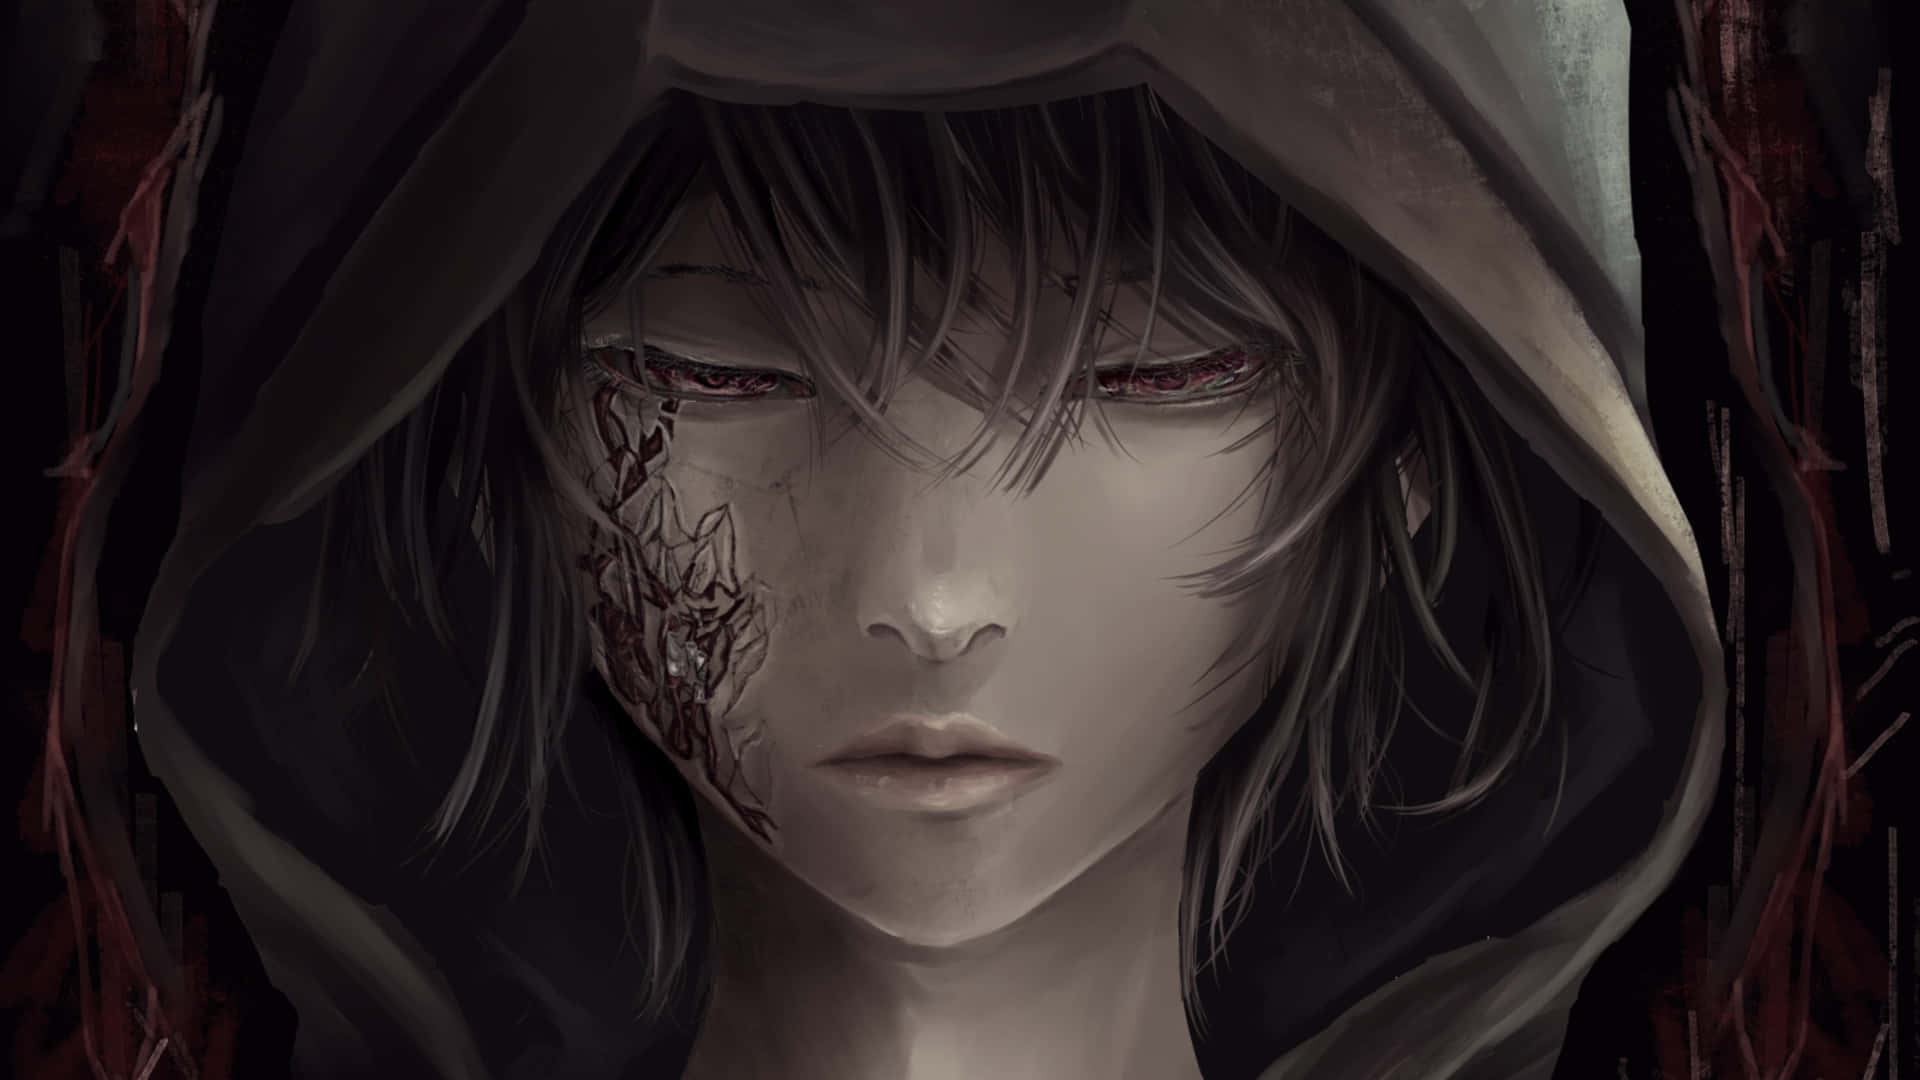 An intense dark anime boy with dark hair and menacing blue eyes. Wallpaper